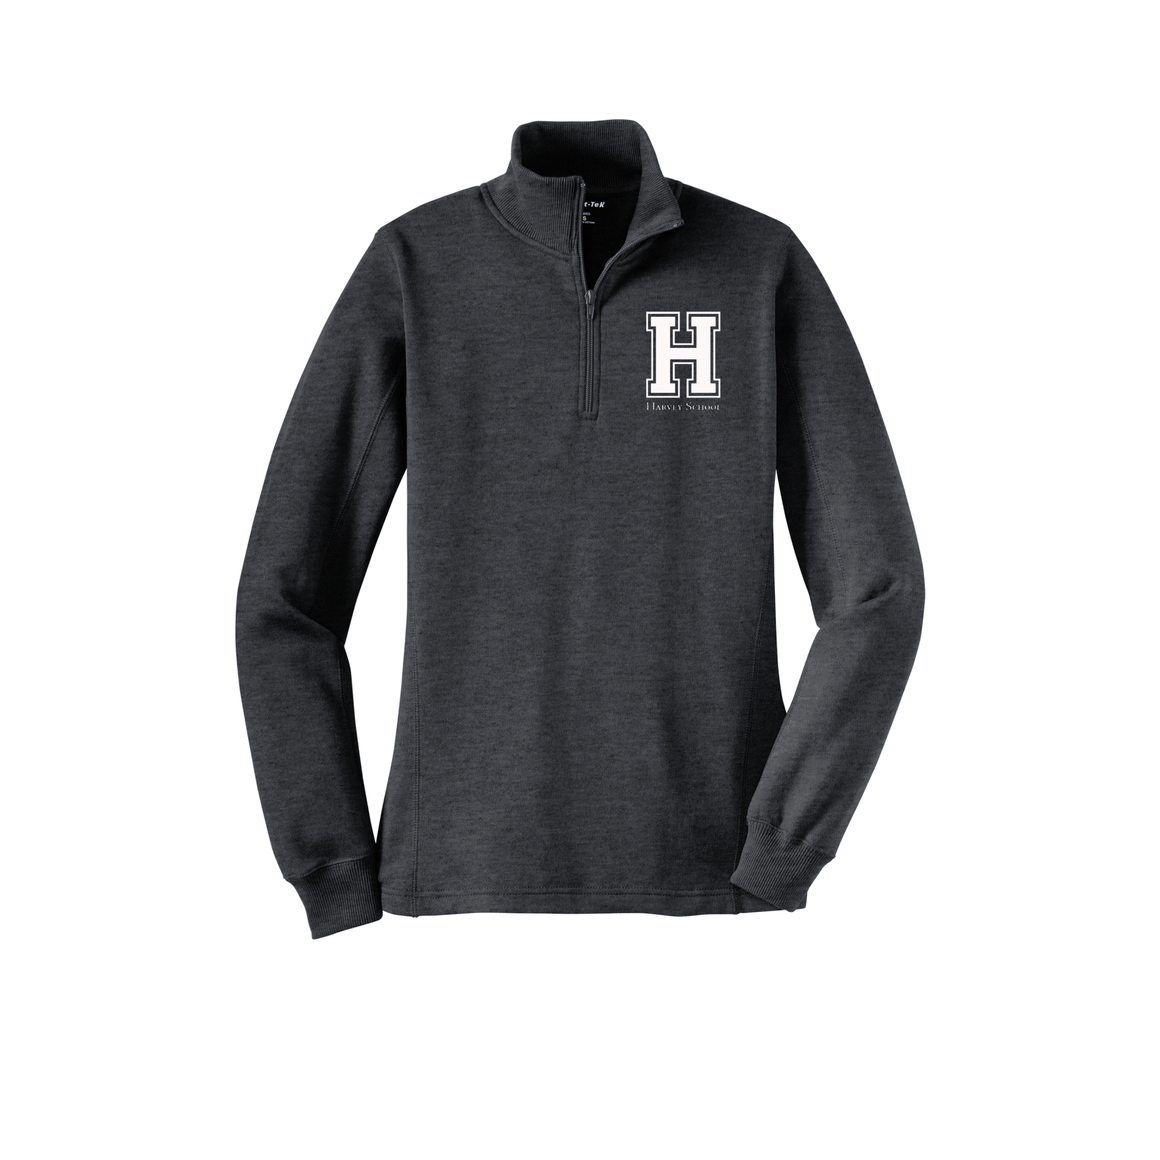 Harvey School Women's 1/4 Zip Sweatshirt